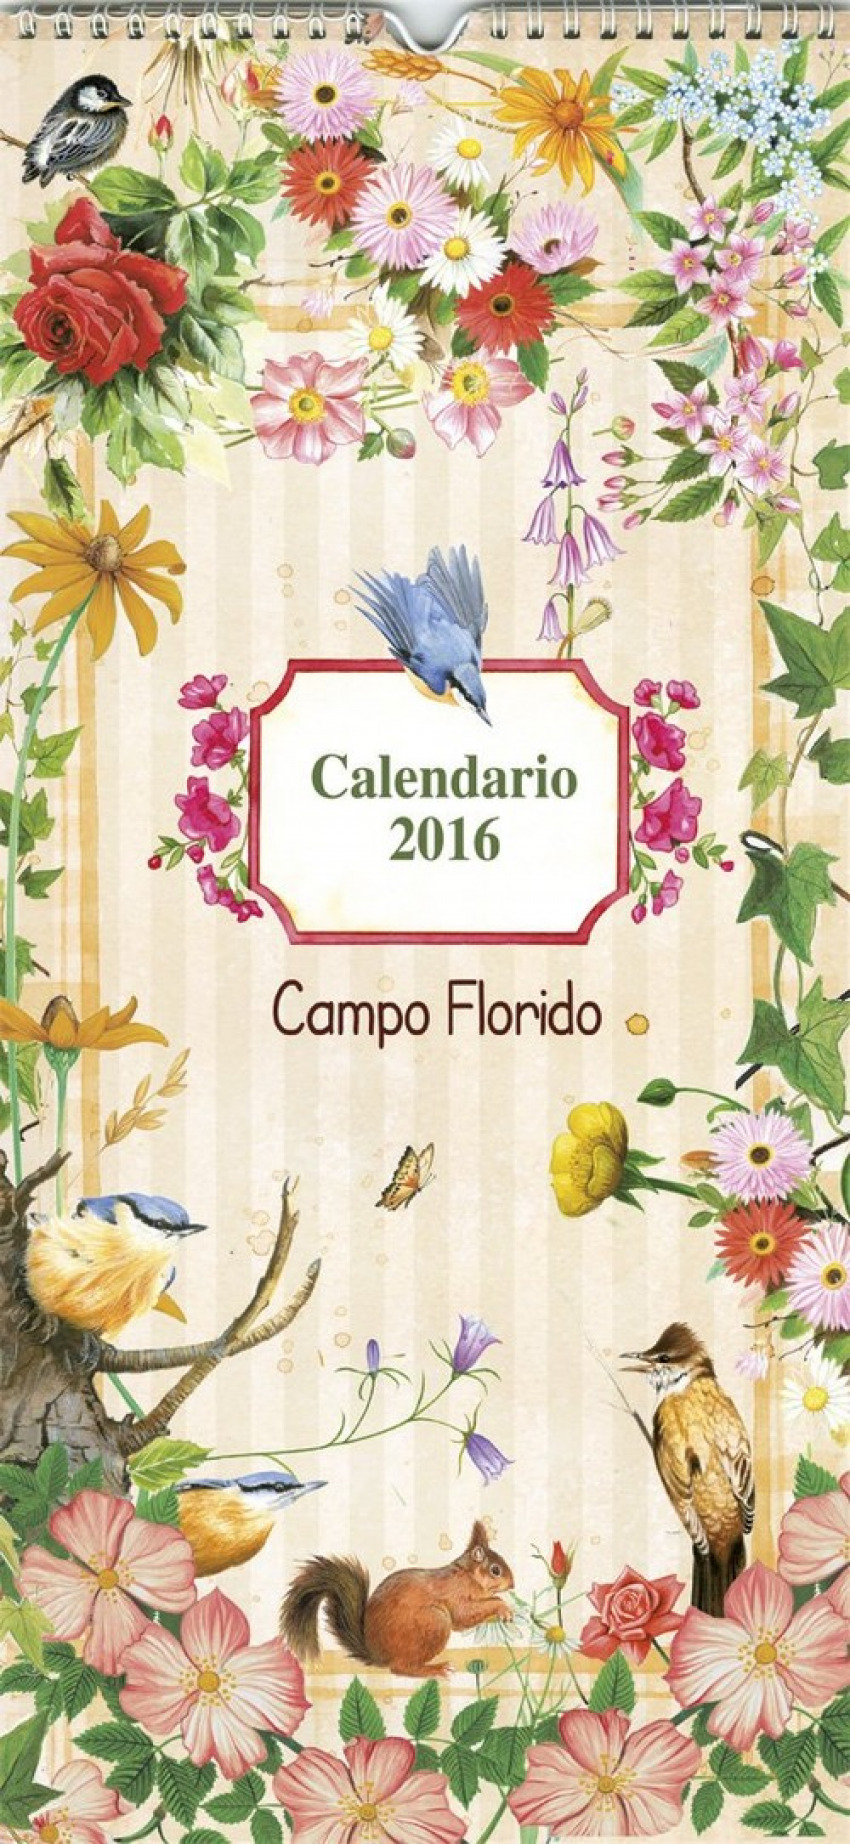 Calendario campo florido 2016 - Vv.Aa.